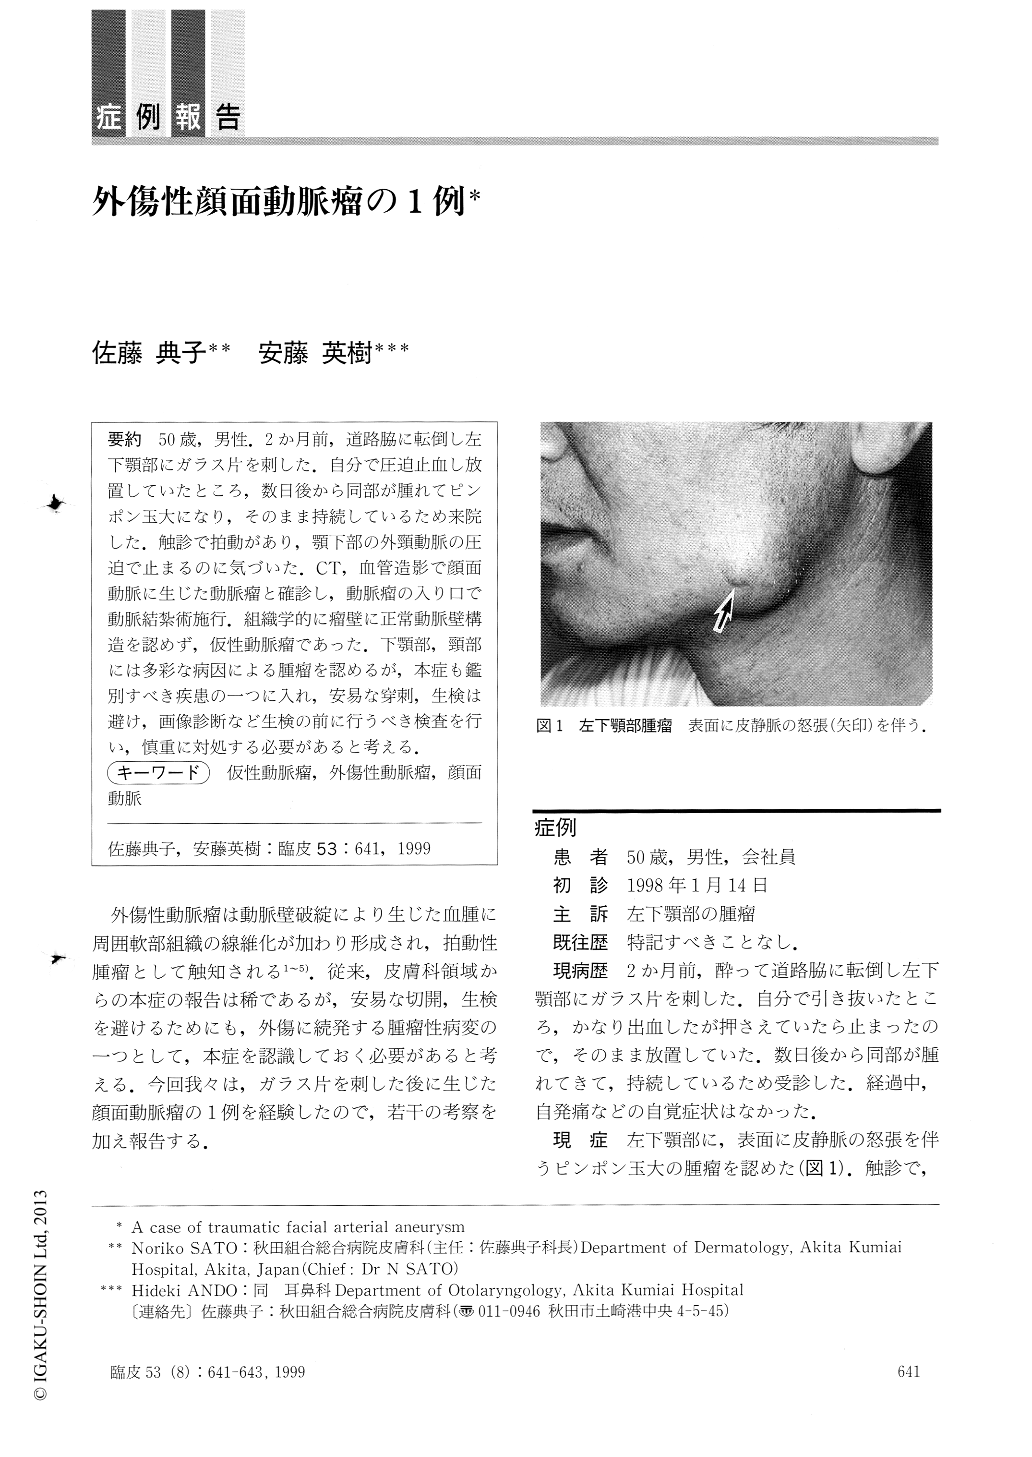 外傷性顔面動脈瘤の1例 臨床皮膚科 53巻8号 医書 Jp